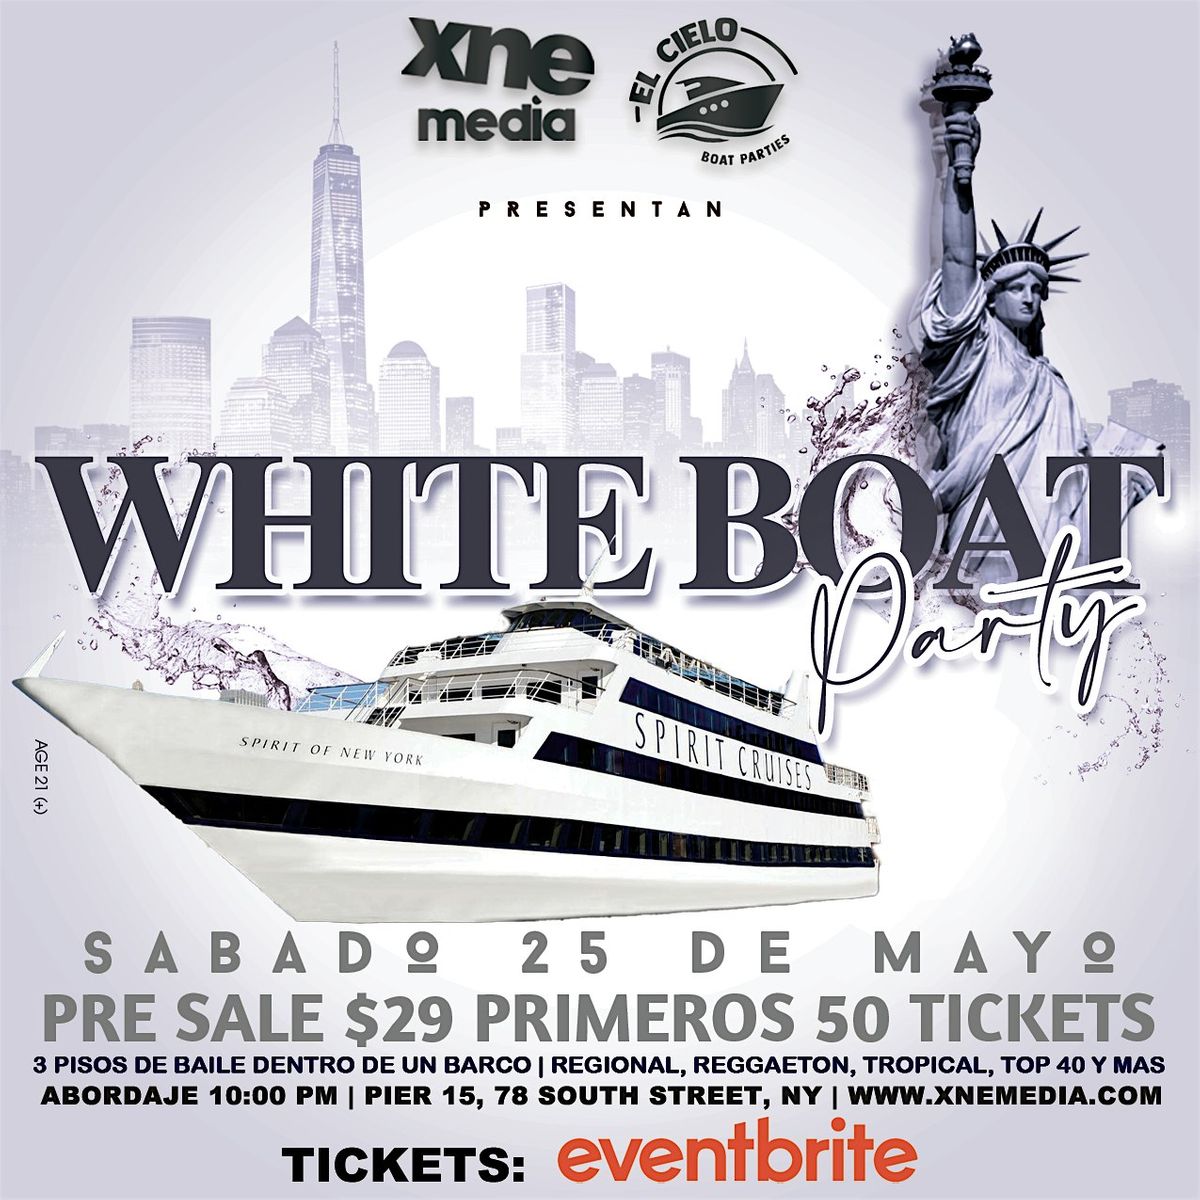 WHITE BOAT PARTY | New York, NY